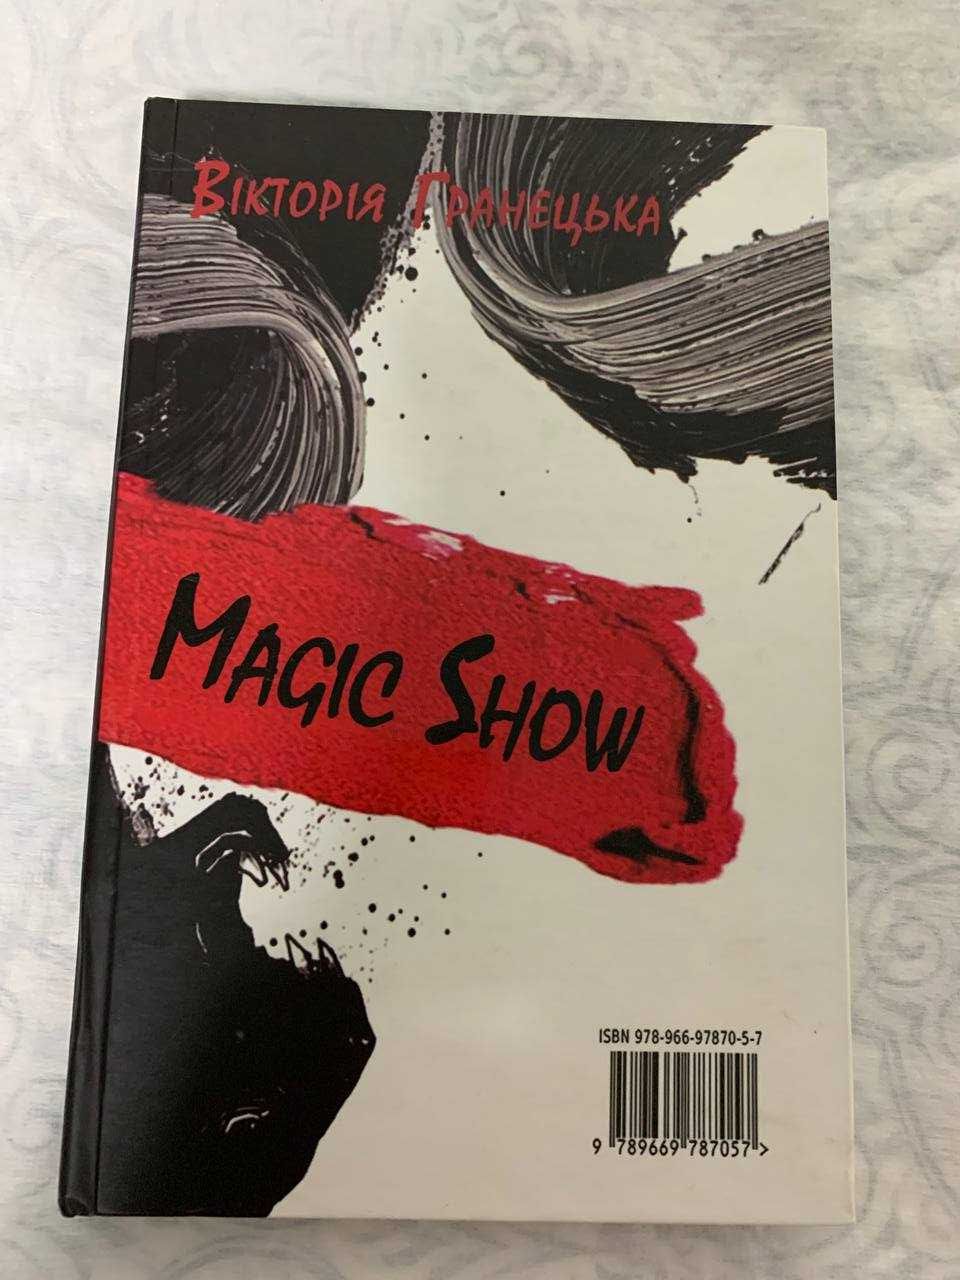 Книга Вікторії Гранецької "Reality Show/Magic show"